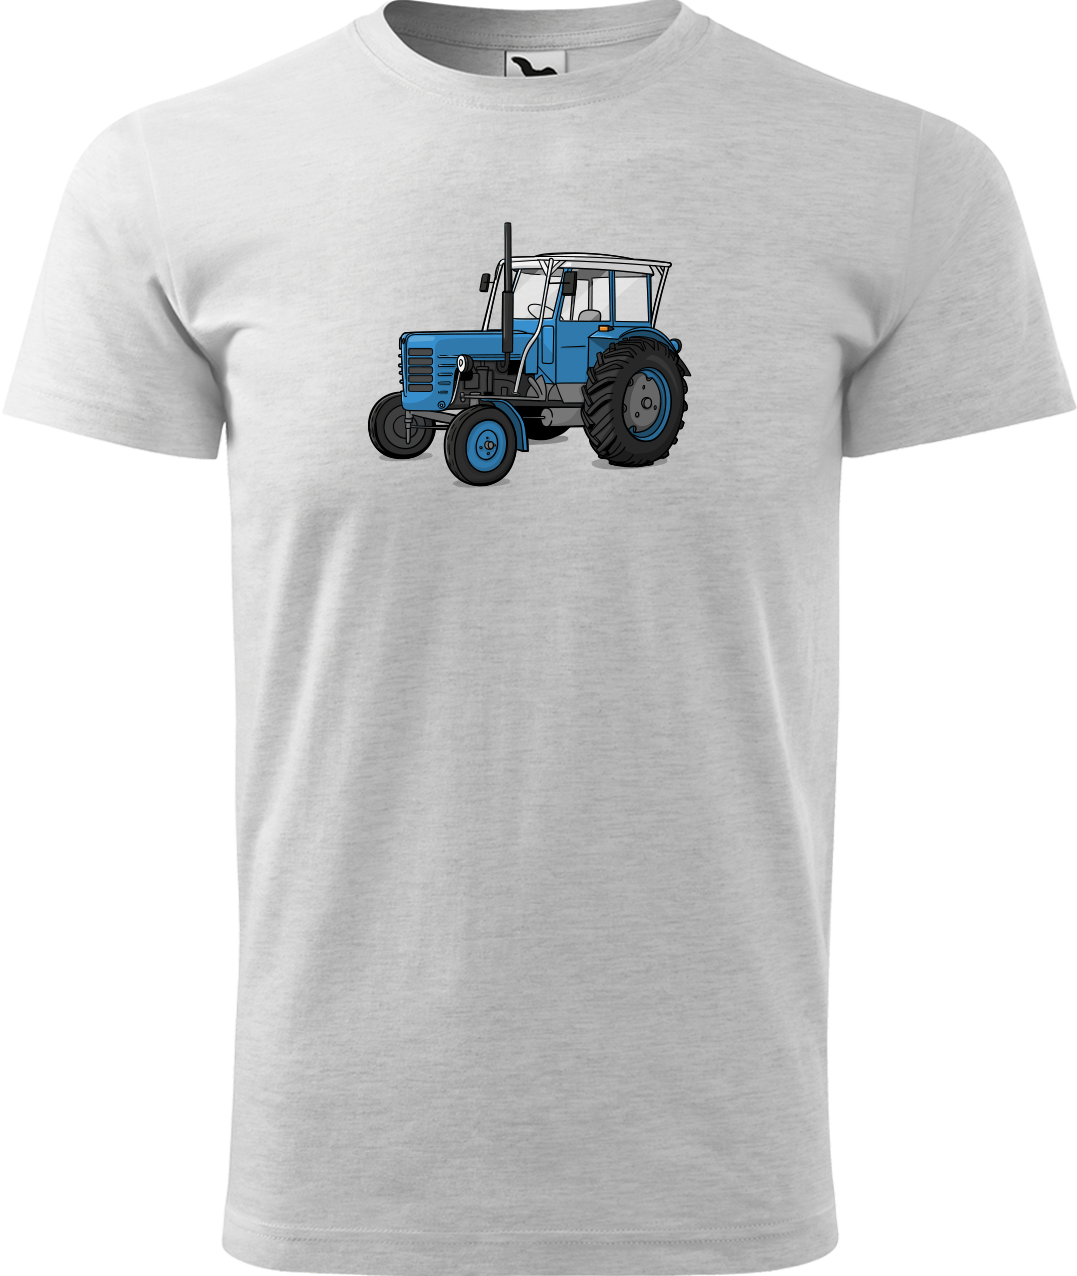 Tričko s traktorem - Starý traktor Velikost: L, Barva: Světle šedý melír (03)